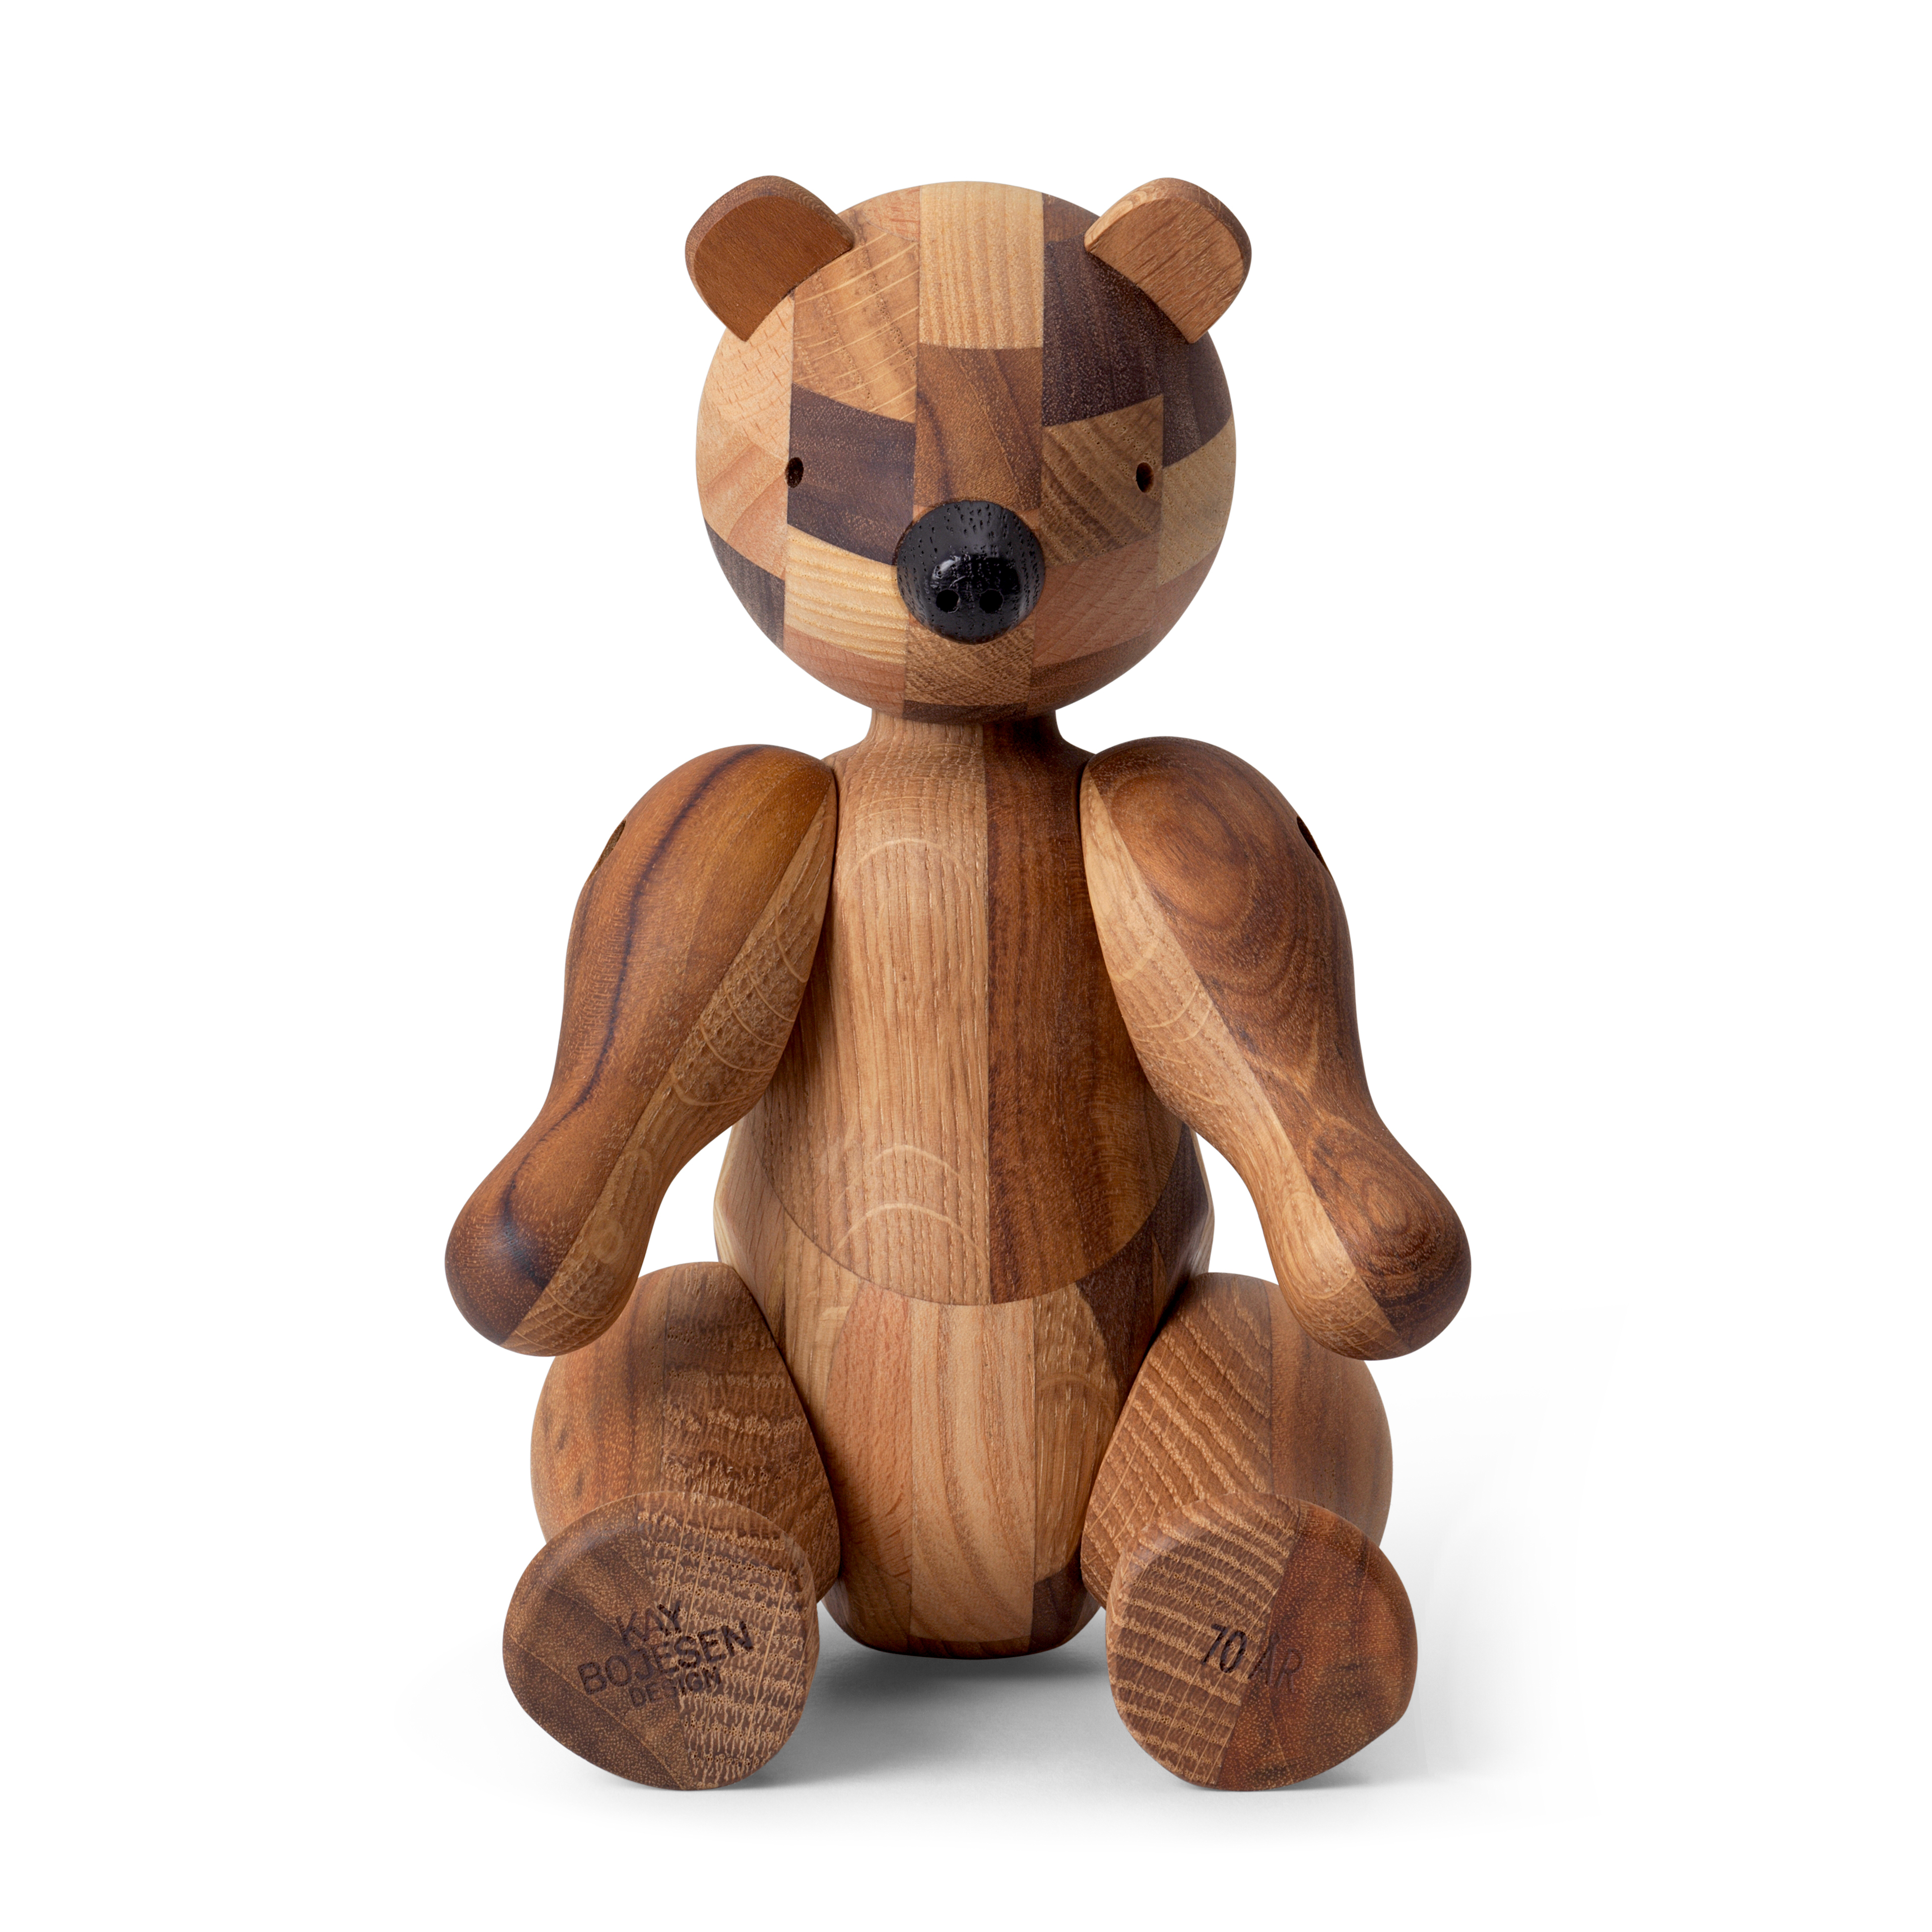 Medium wooden bear